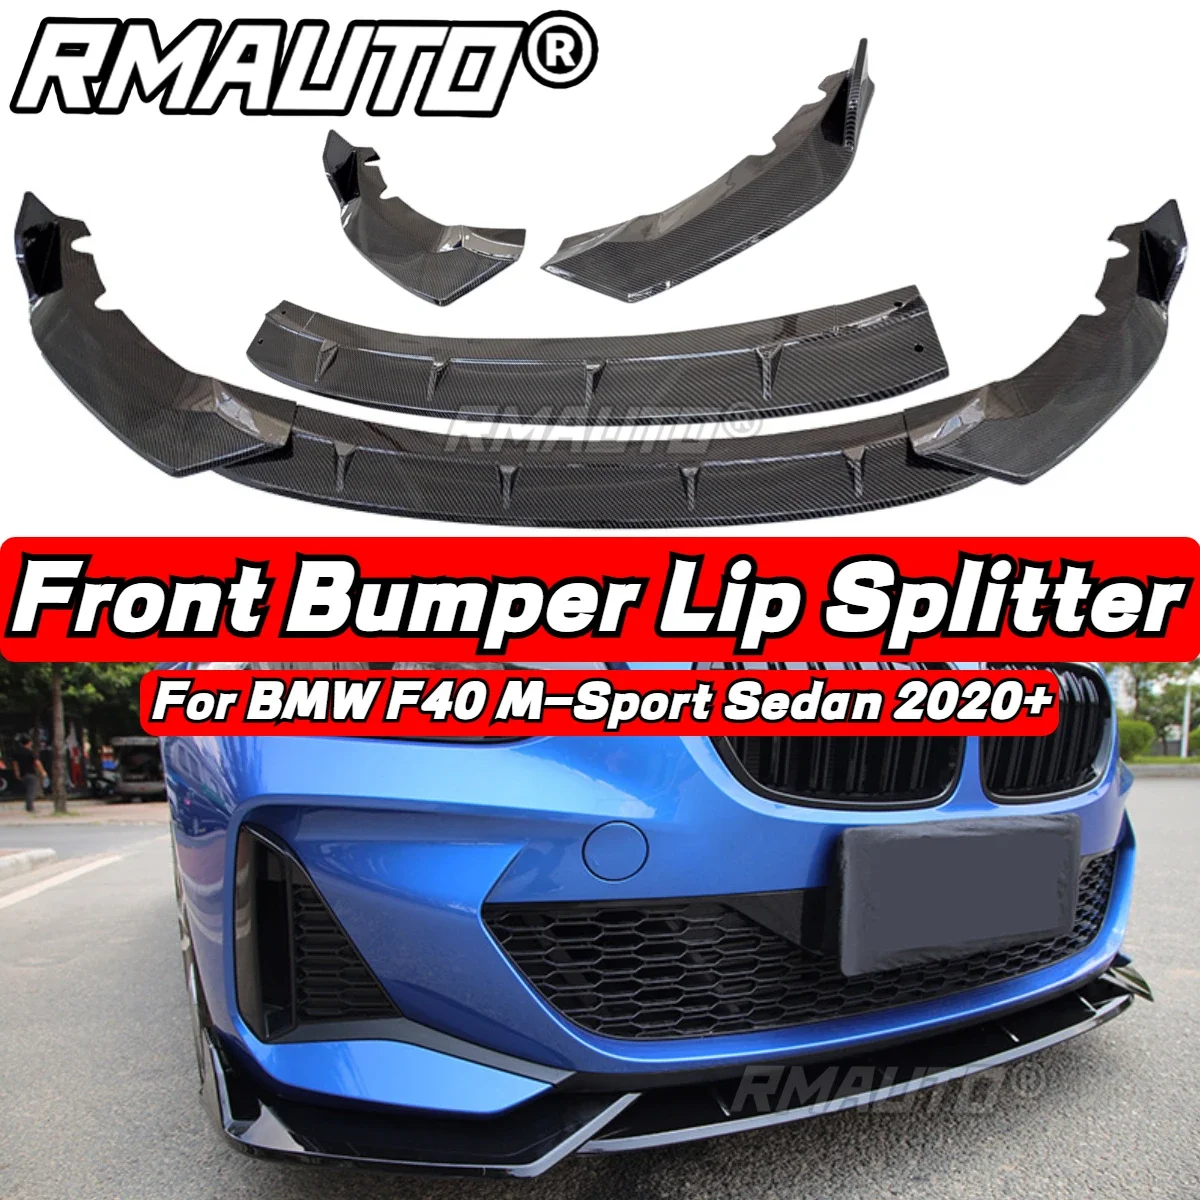 

F40 Lip Carbon Fiber Front Bumper Splitter Lip Diffuser Spoiler Guard For BMW 1 Series F40 M-Sport Sedan 2020+ Exterior Part